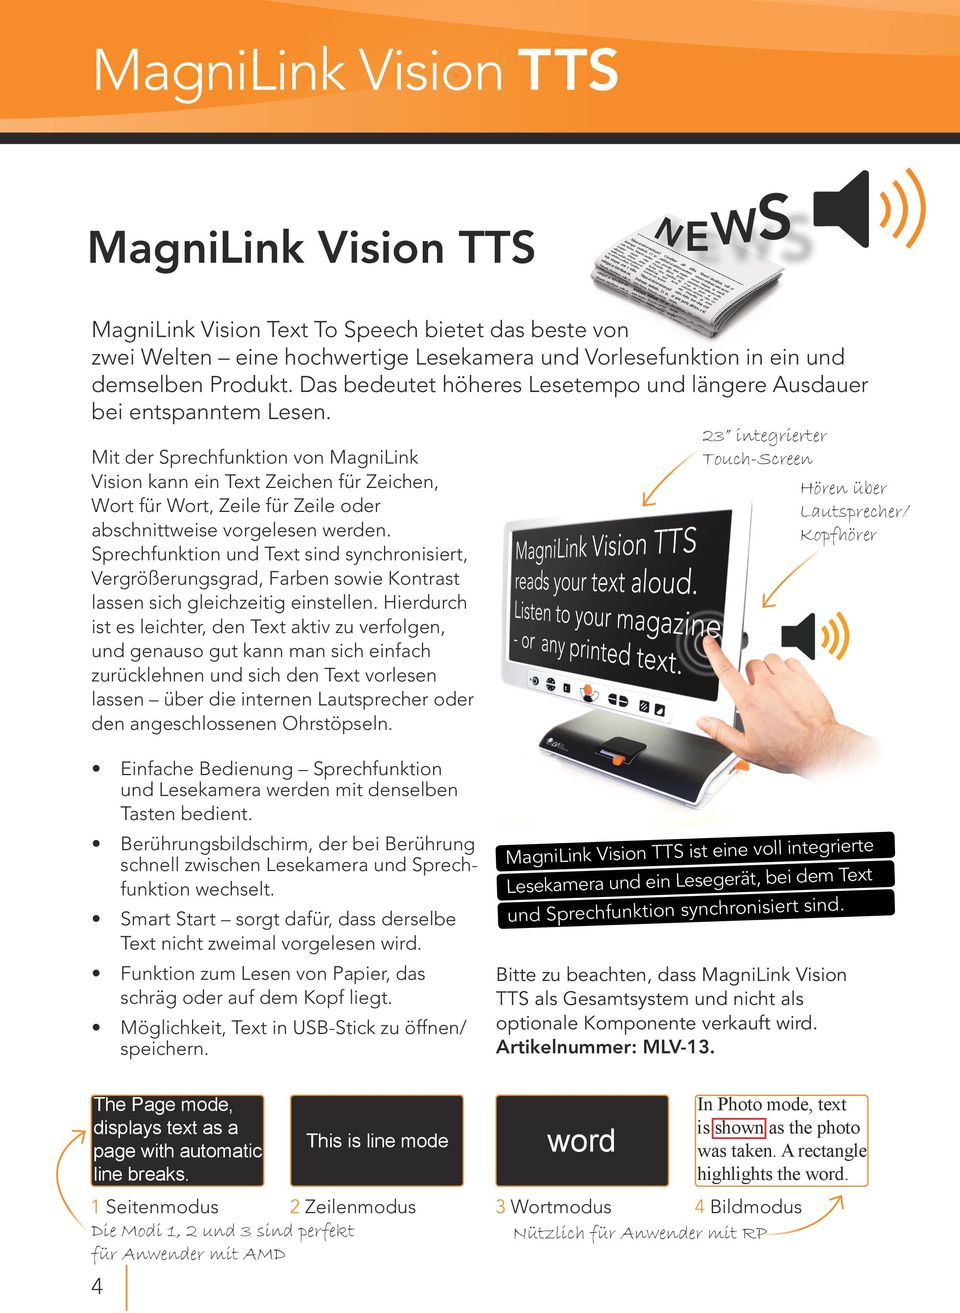 Mit der Sprechfunktion von MagniLink Vision kann ein Text Zeichen für Zeichen, Wort für Wort, Zeile für Zeile oder abschnittweise vorgelesen werden.